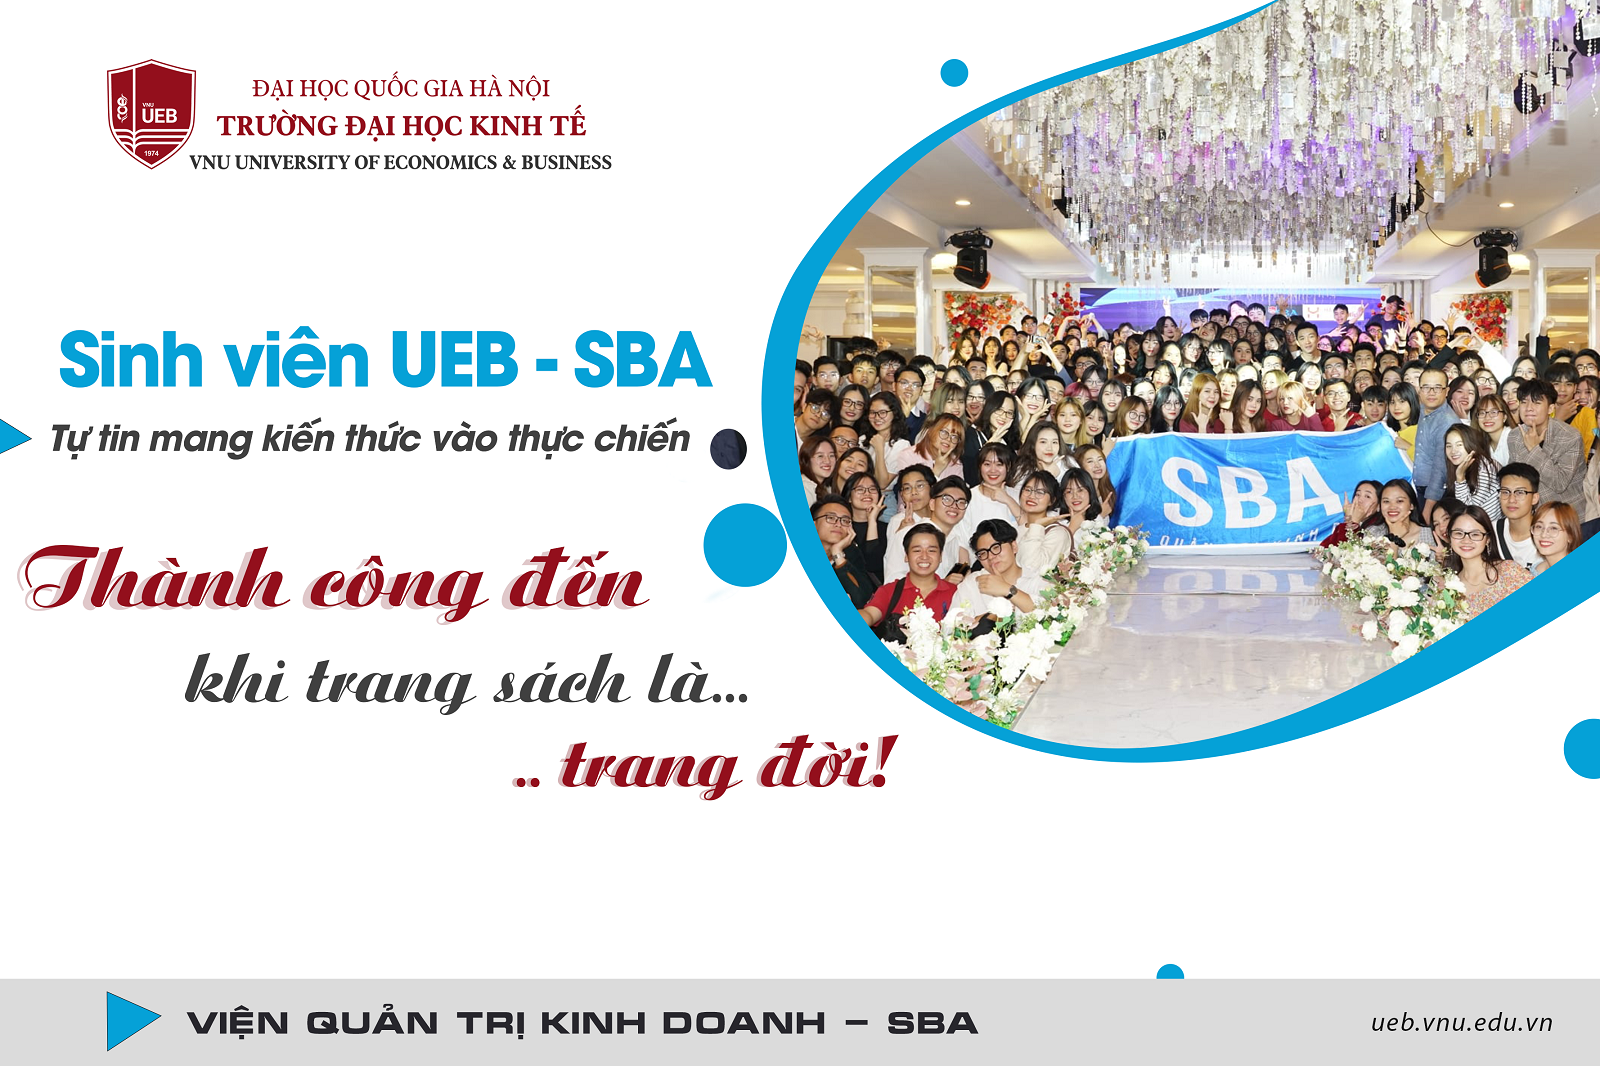 Sinh viên UEB - SBA tự tin mang kiến thức vào thực chiến: Thành công đến khi trang sách là… trang đời!